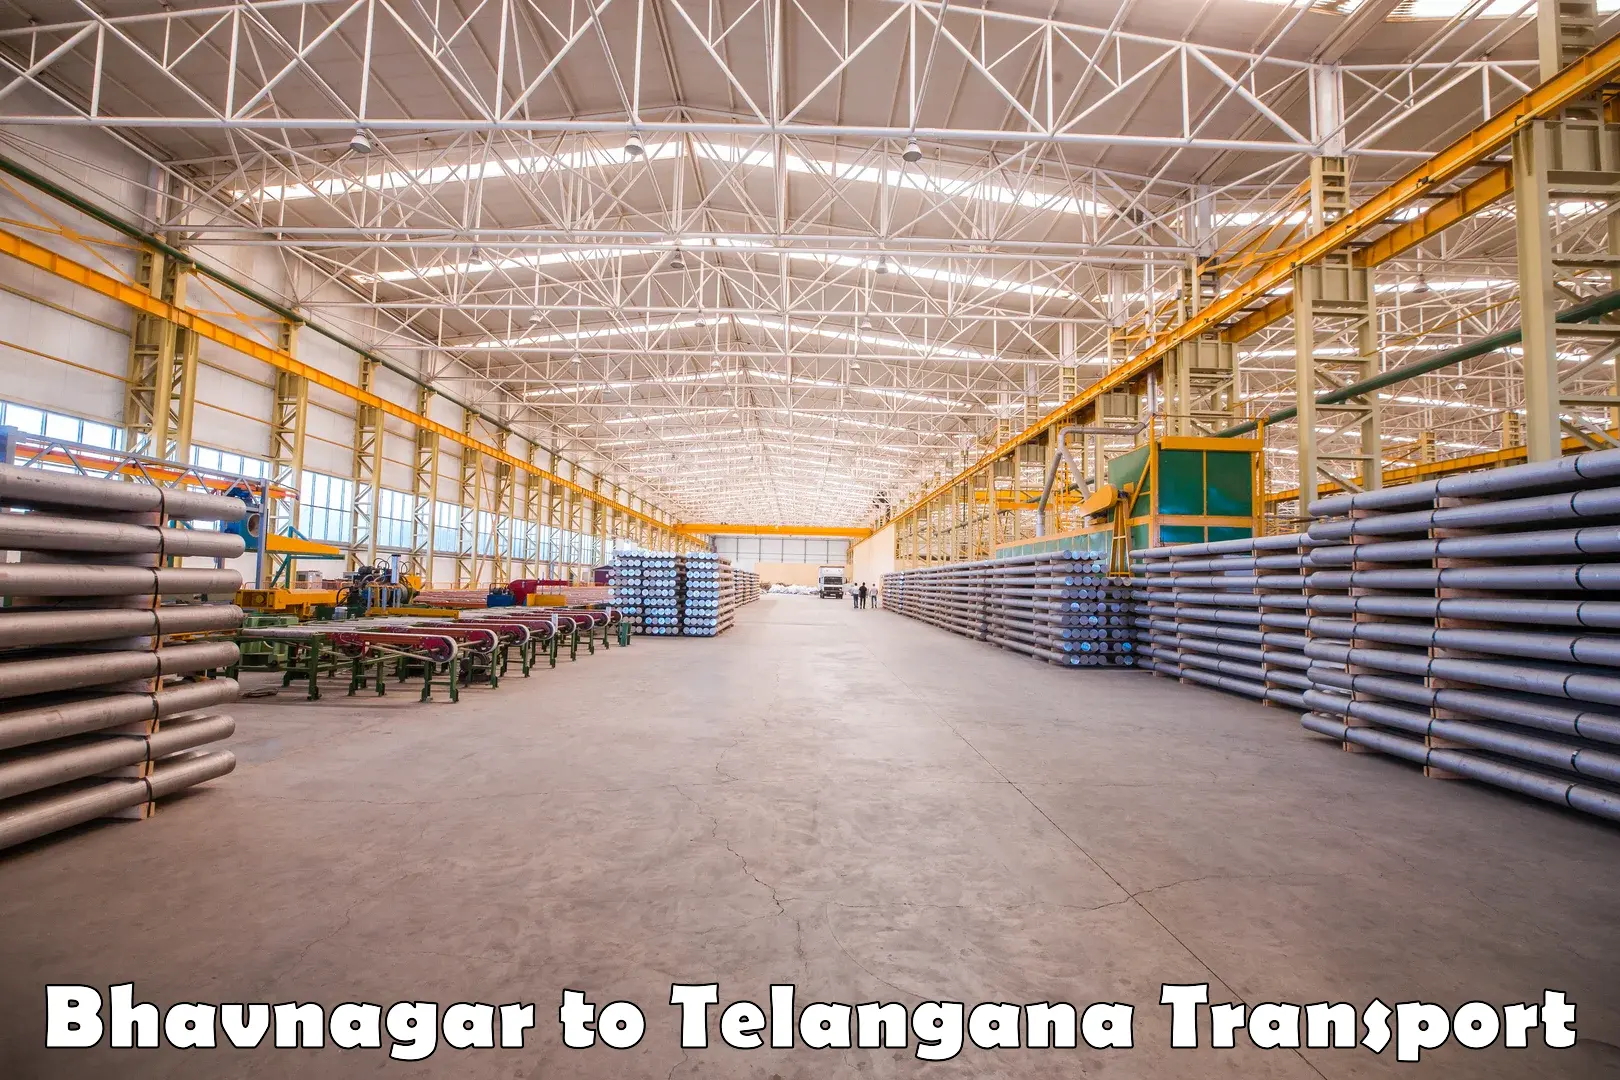 Furniture transport service Bhavnagar to Bhadrachalam